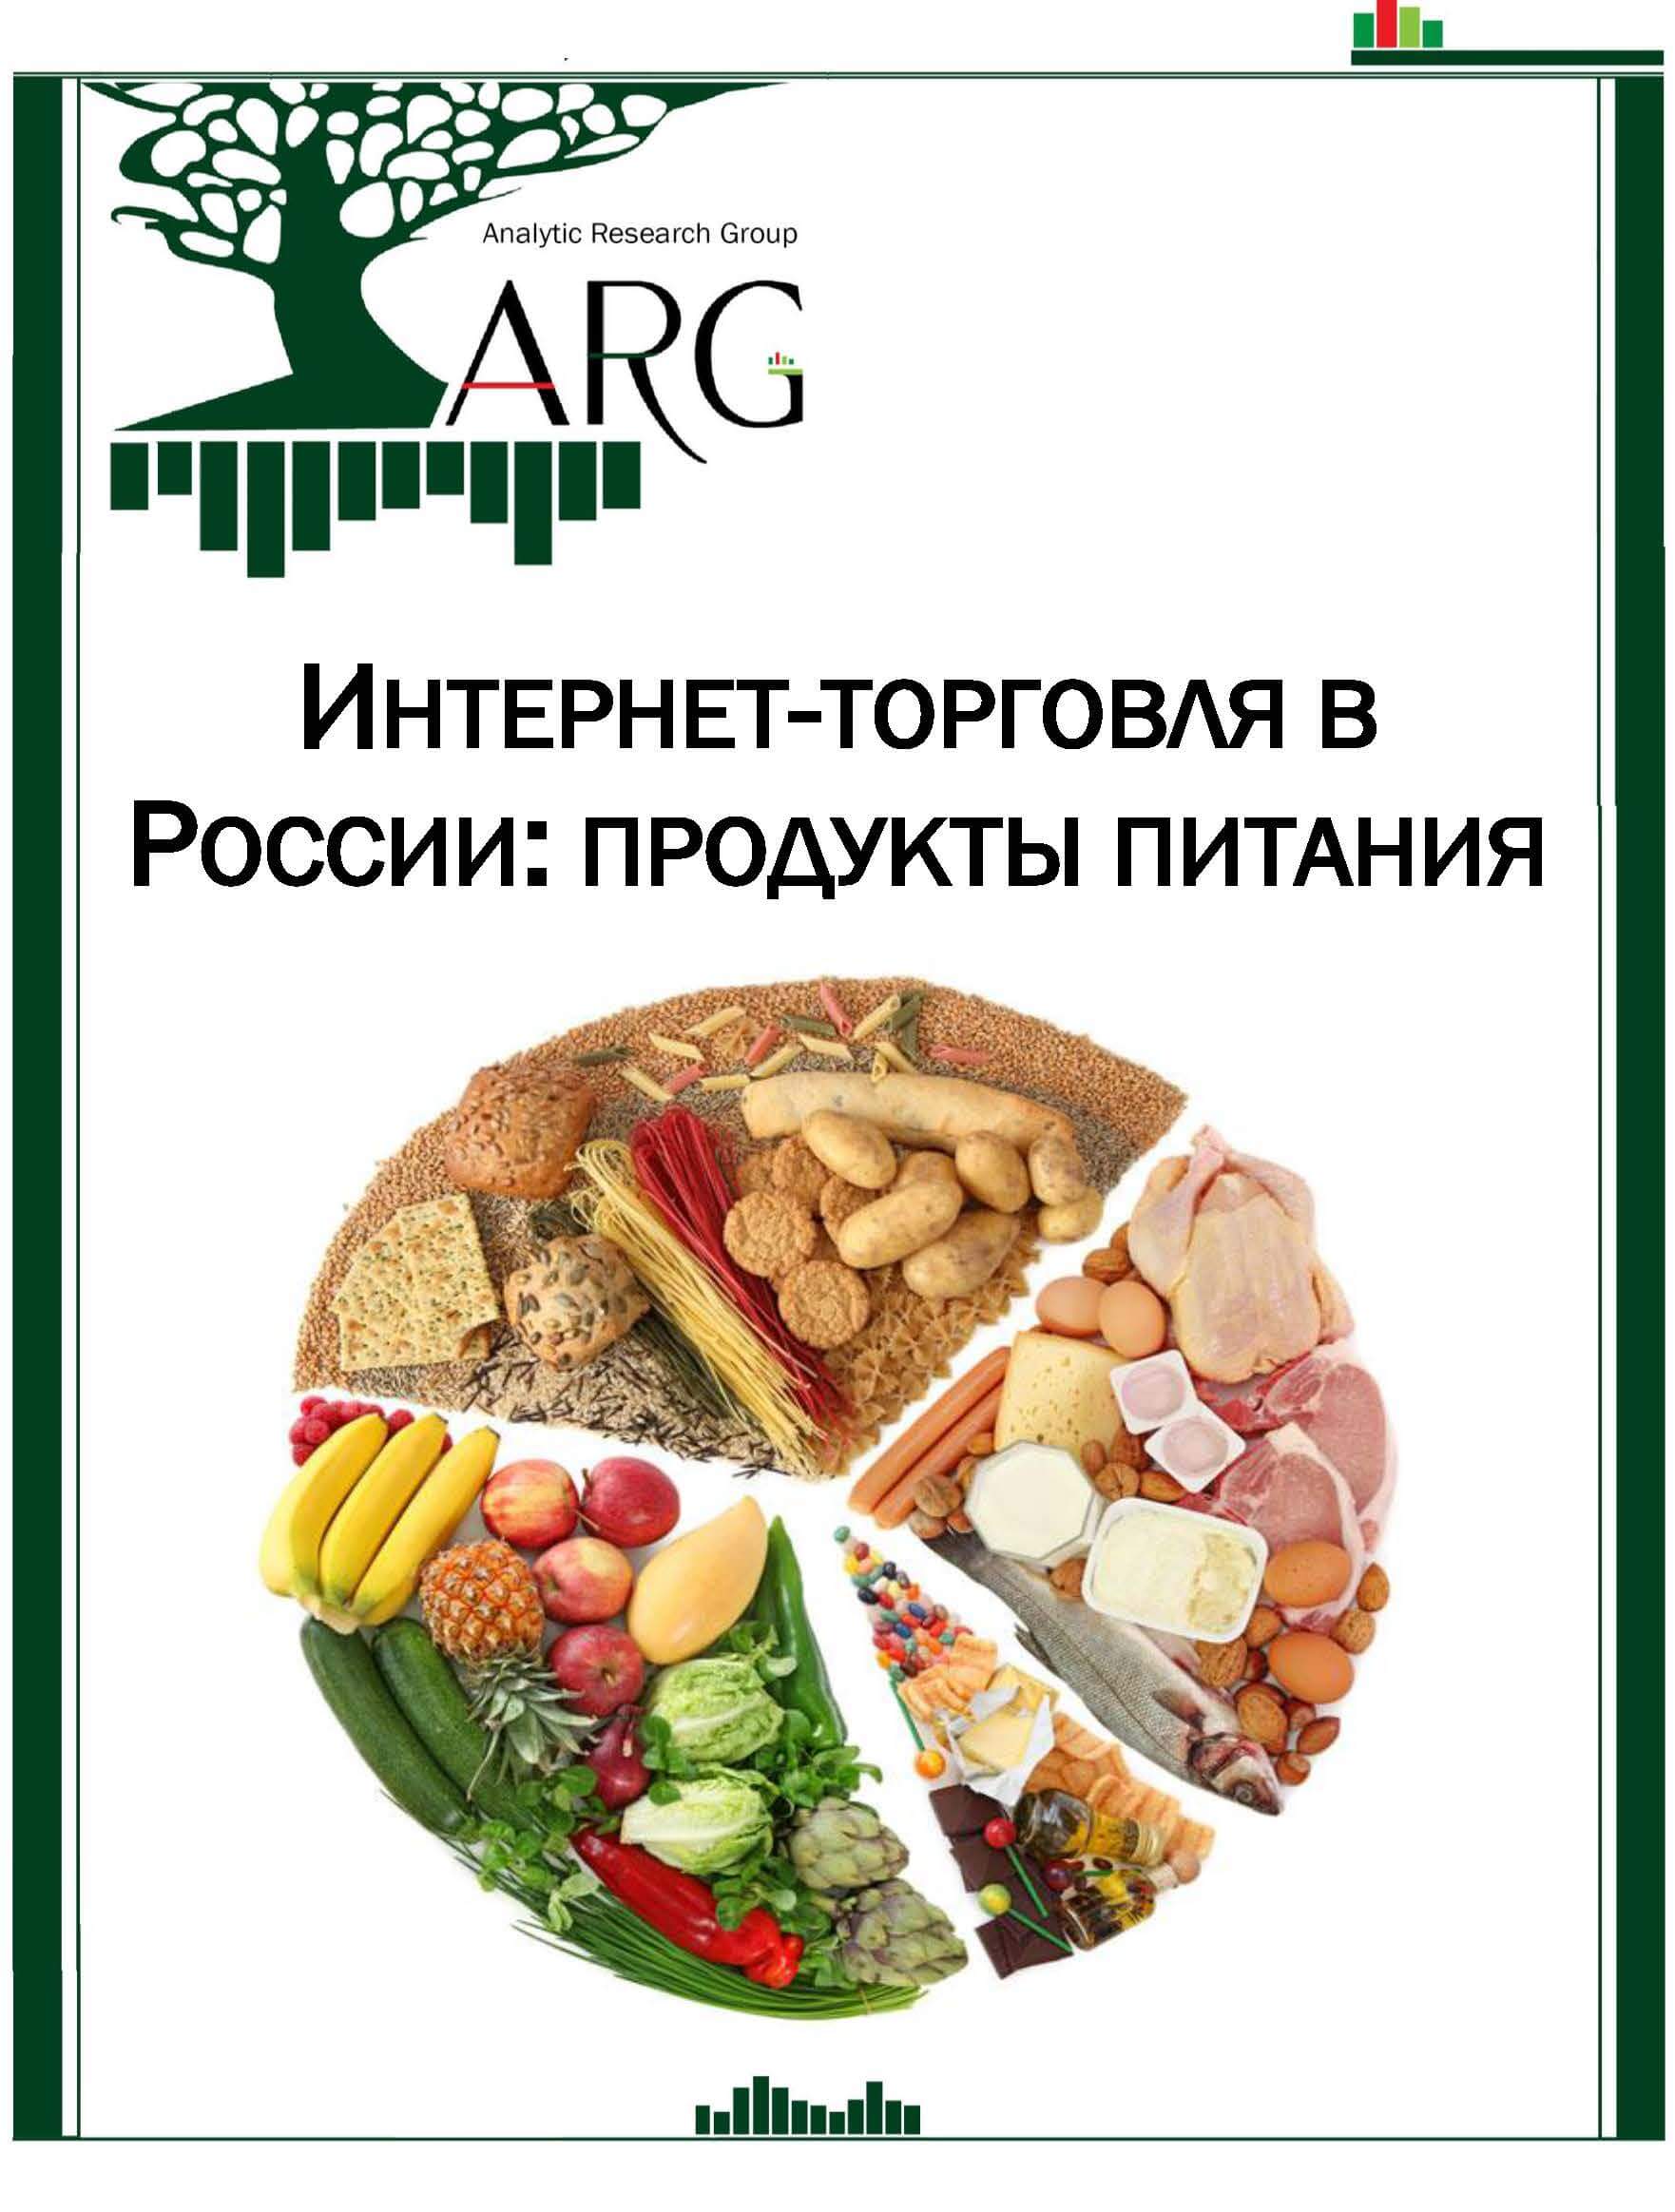 Качество российских продуктов. Продукты питания. Рынок продуктов питания. Российские продукты. Торговля   продуктовый питания.